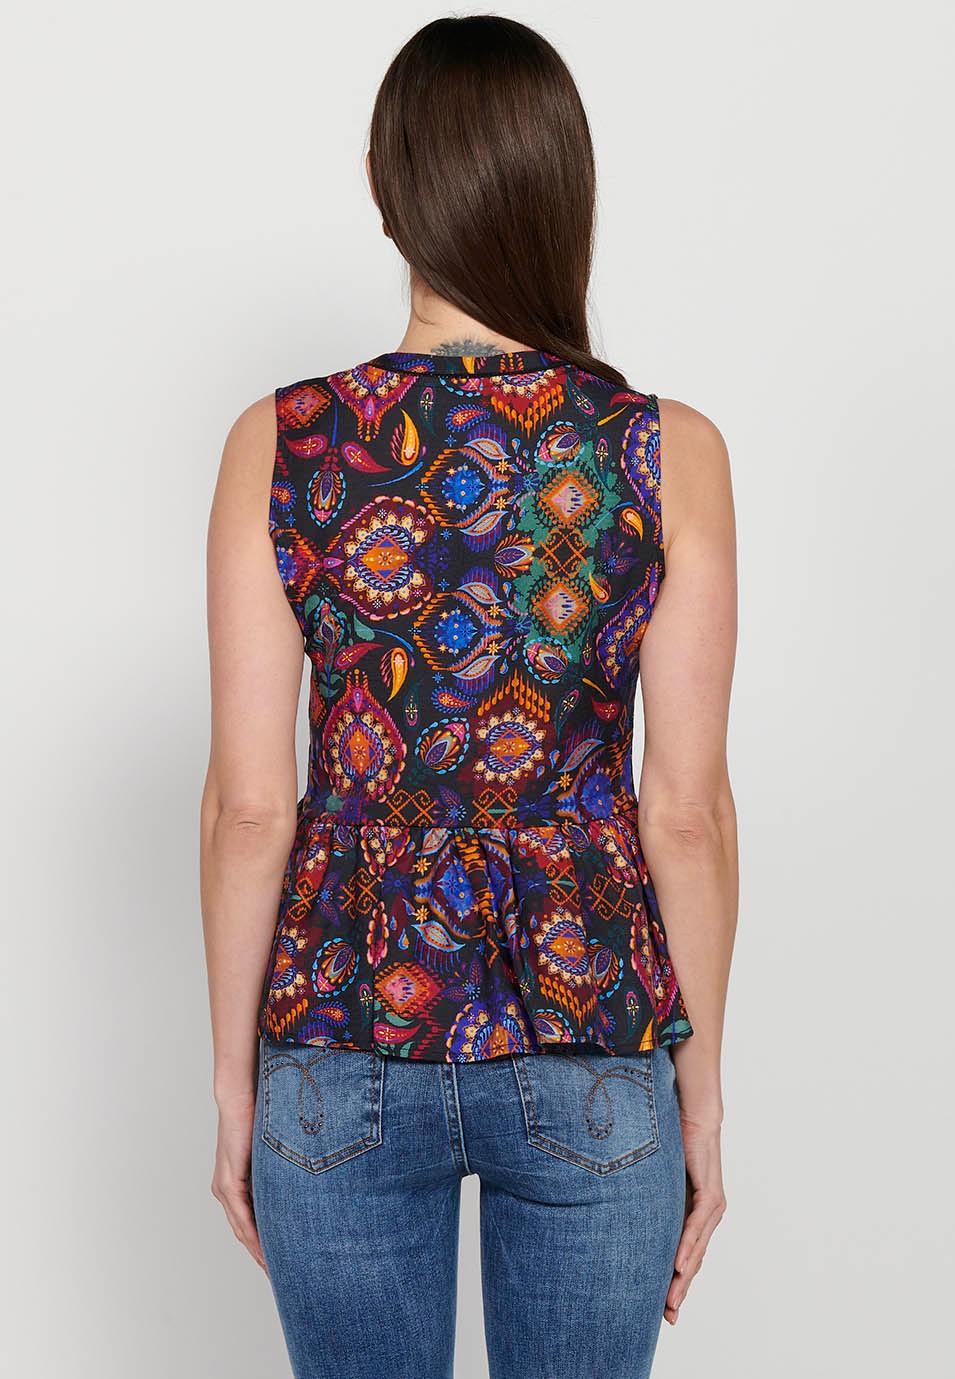 Sleeveless blouse, V-neckline, multicolored floral print for women